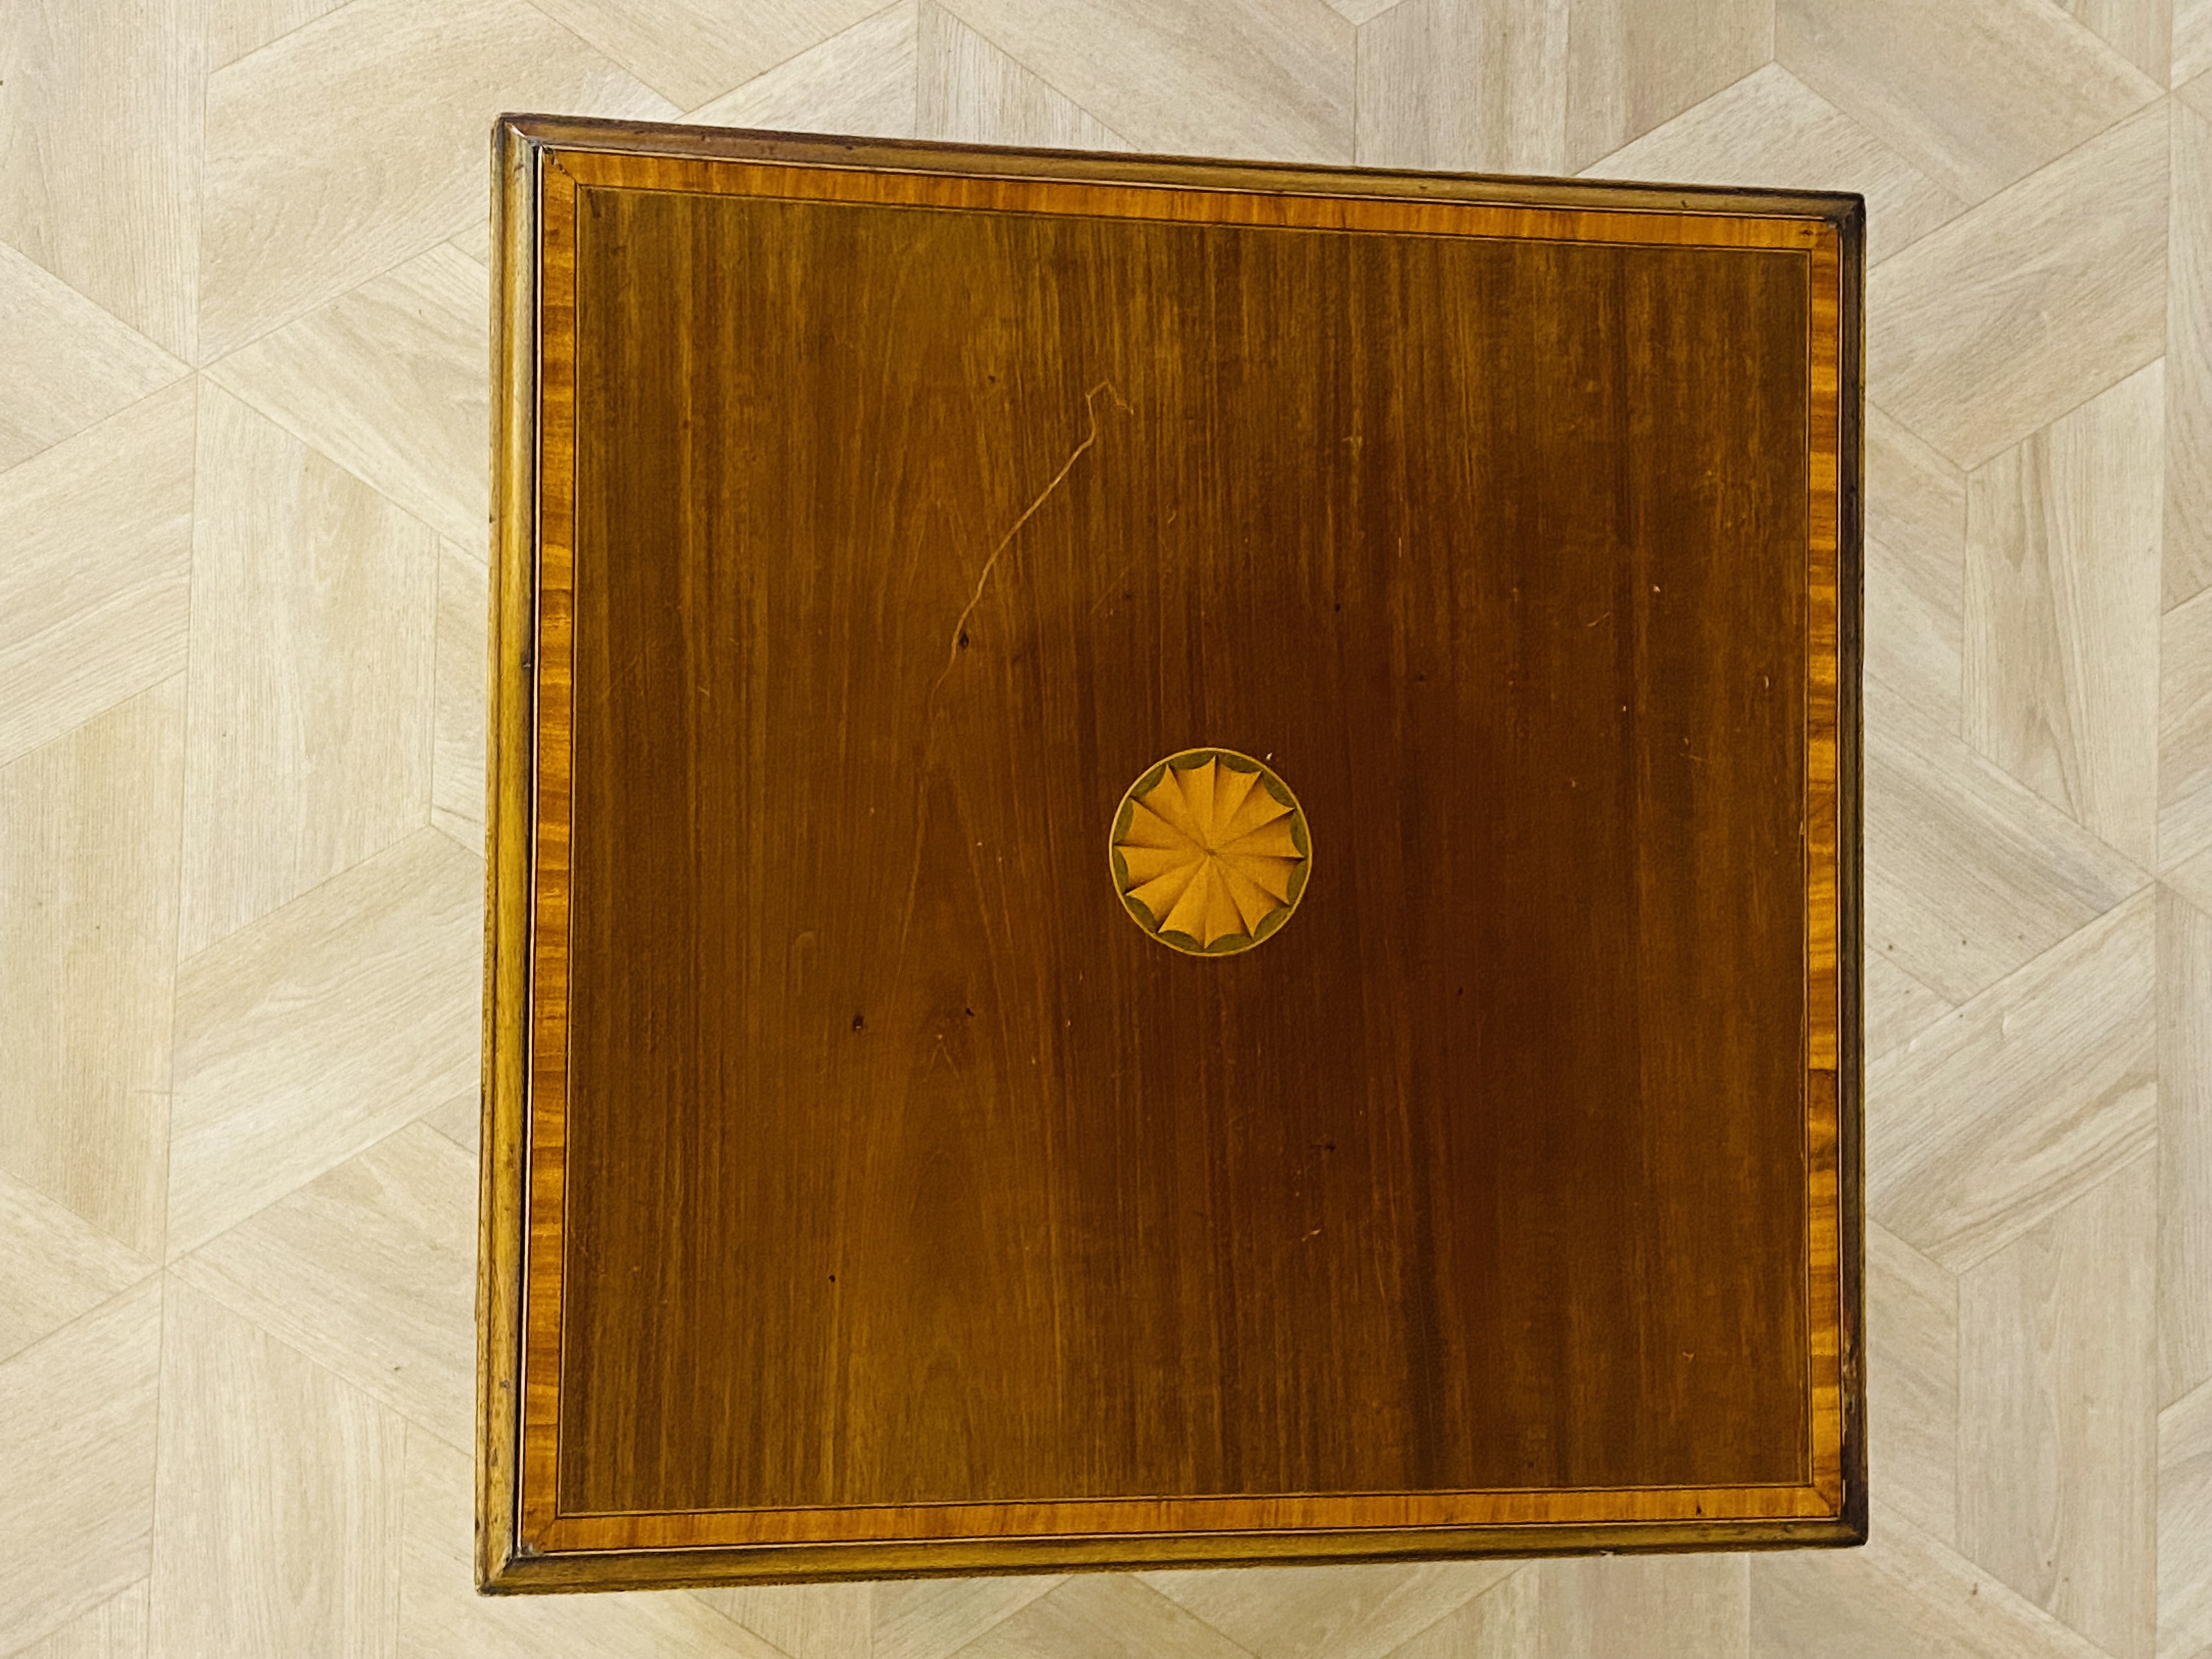 Edwardian mahogany revolving bookcase - Image 2 of 5